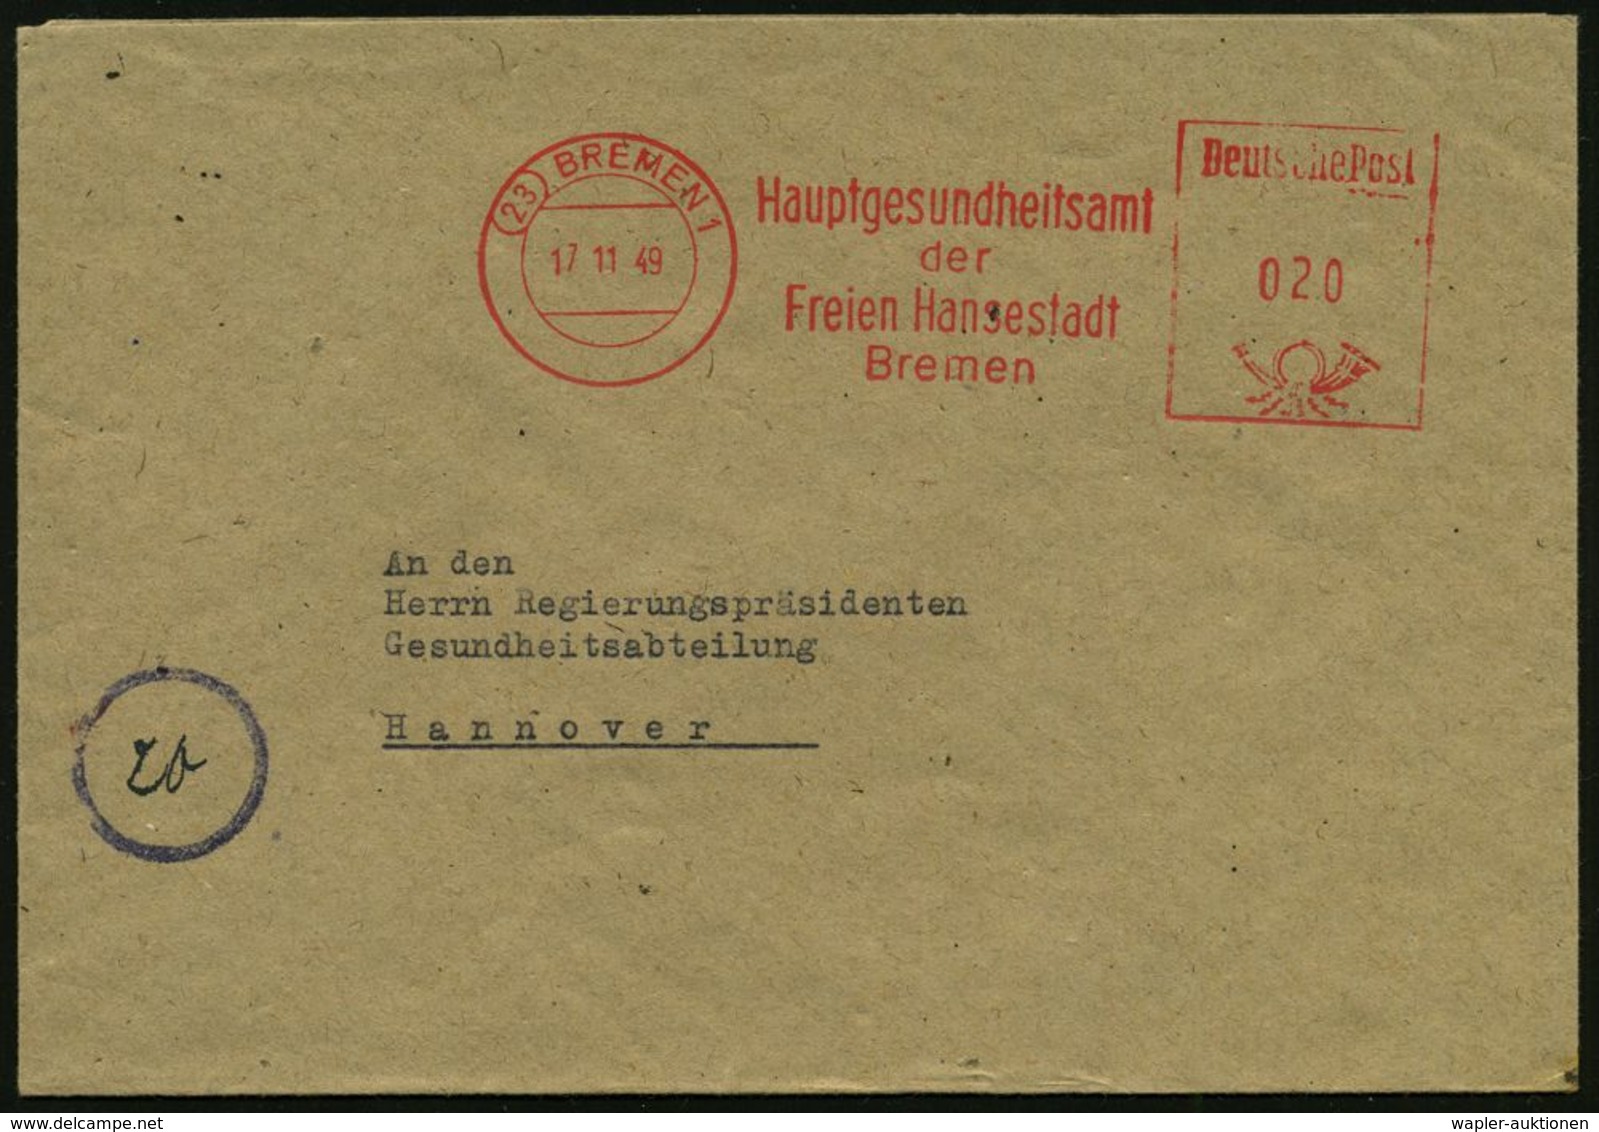 MEDIZINISCHE INSTITUTIONEN & INSTITUTE : (23) BREMEN 1/ Hauptgesundheitsamt/ Der/ Freien Hansestadt 1949 (17.11.) AFS ,  - Medicine